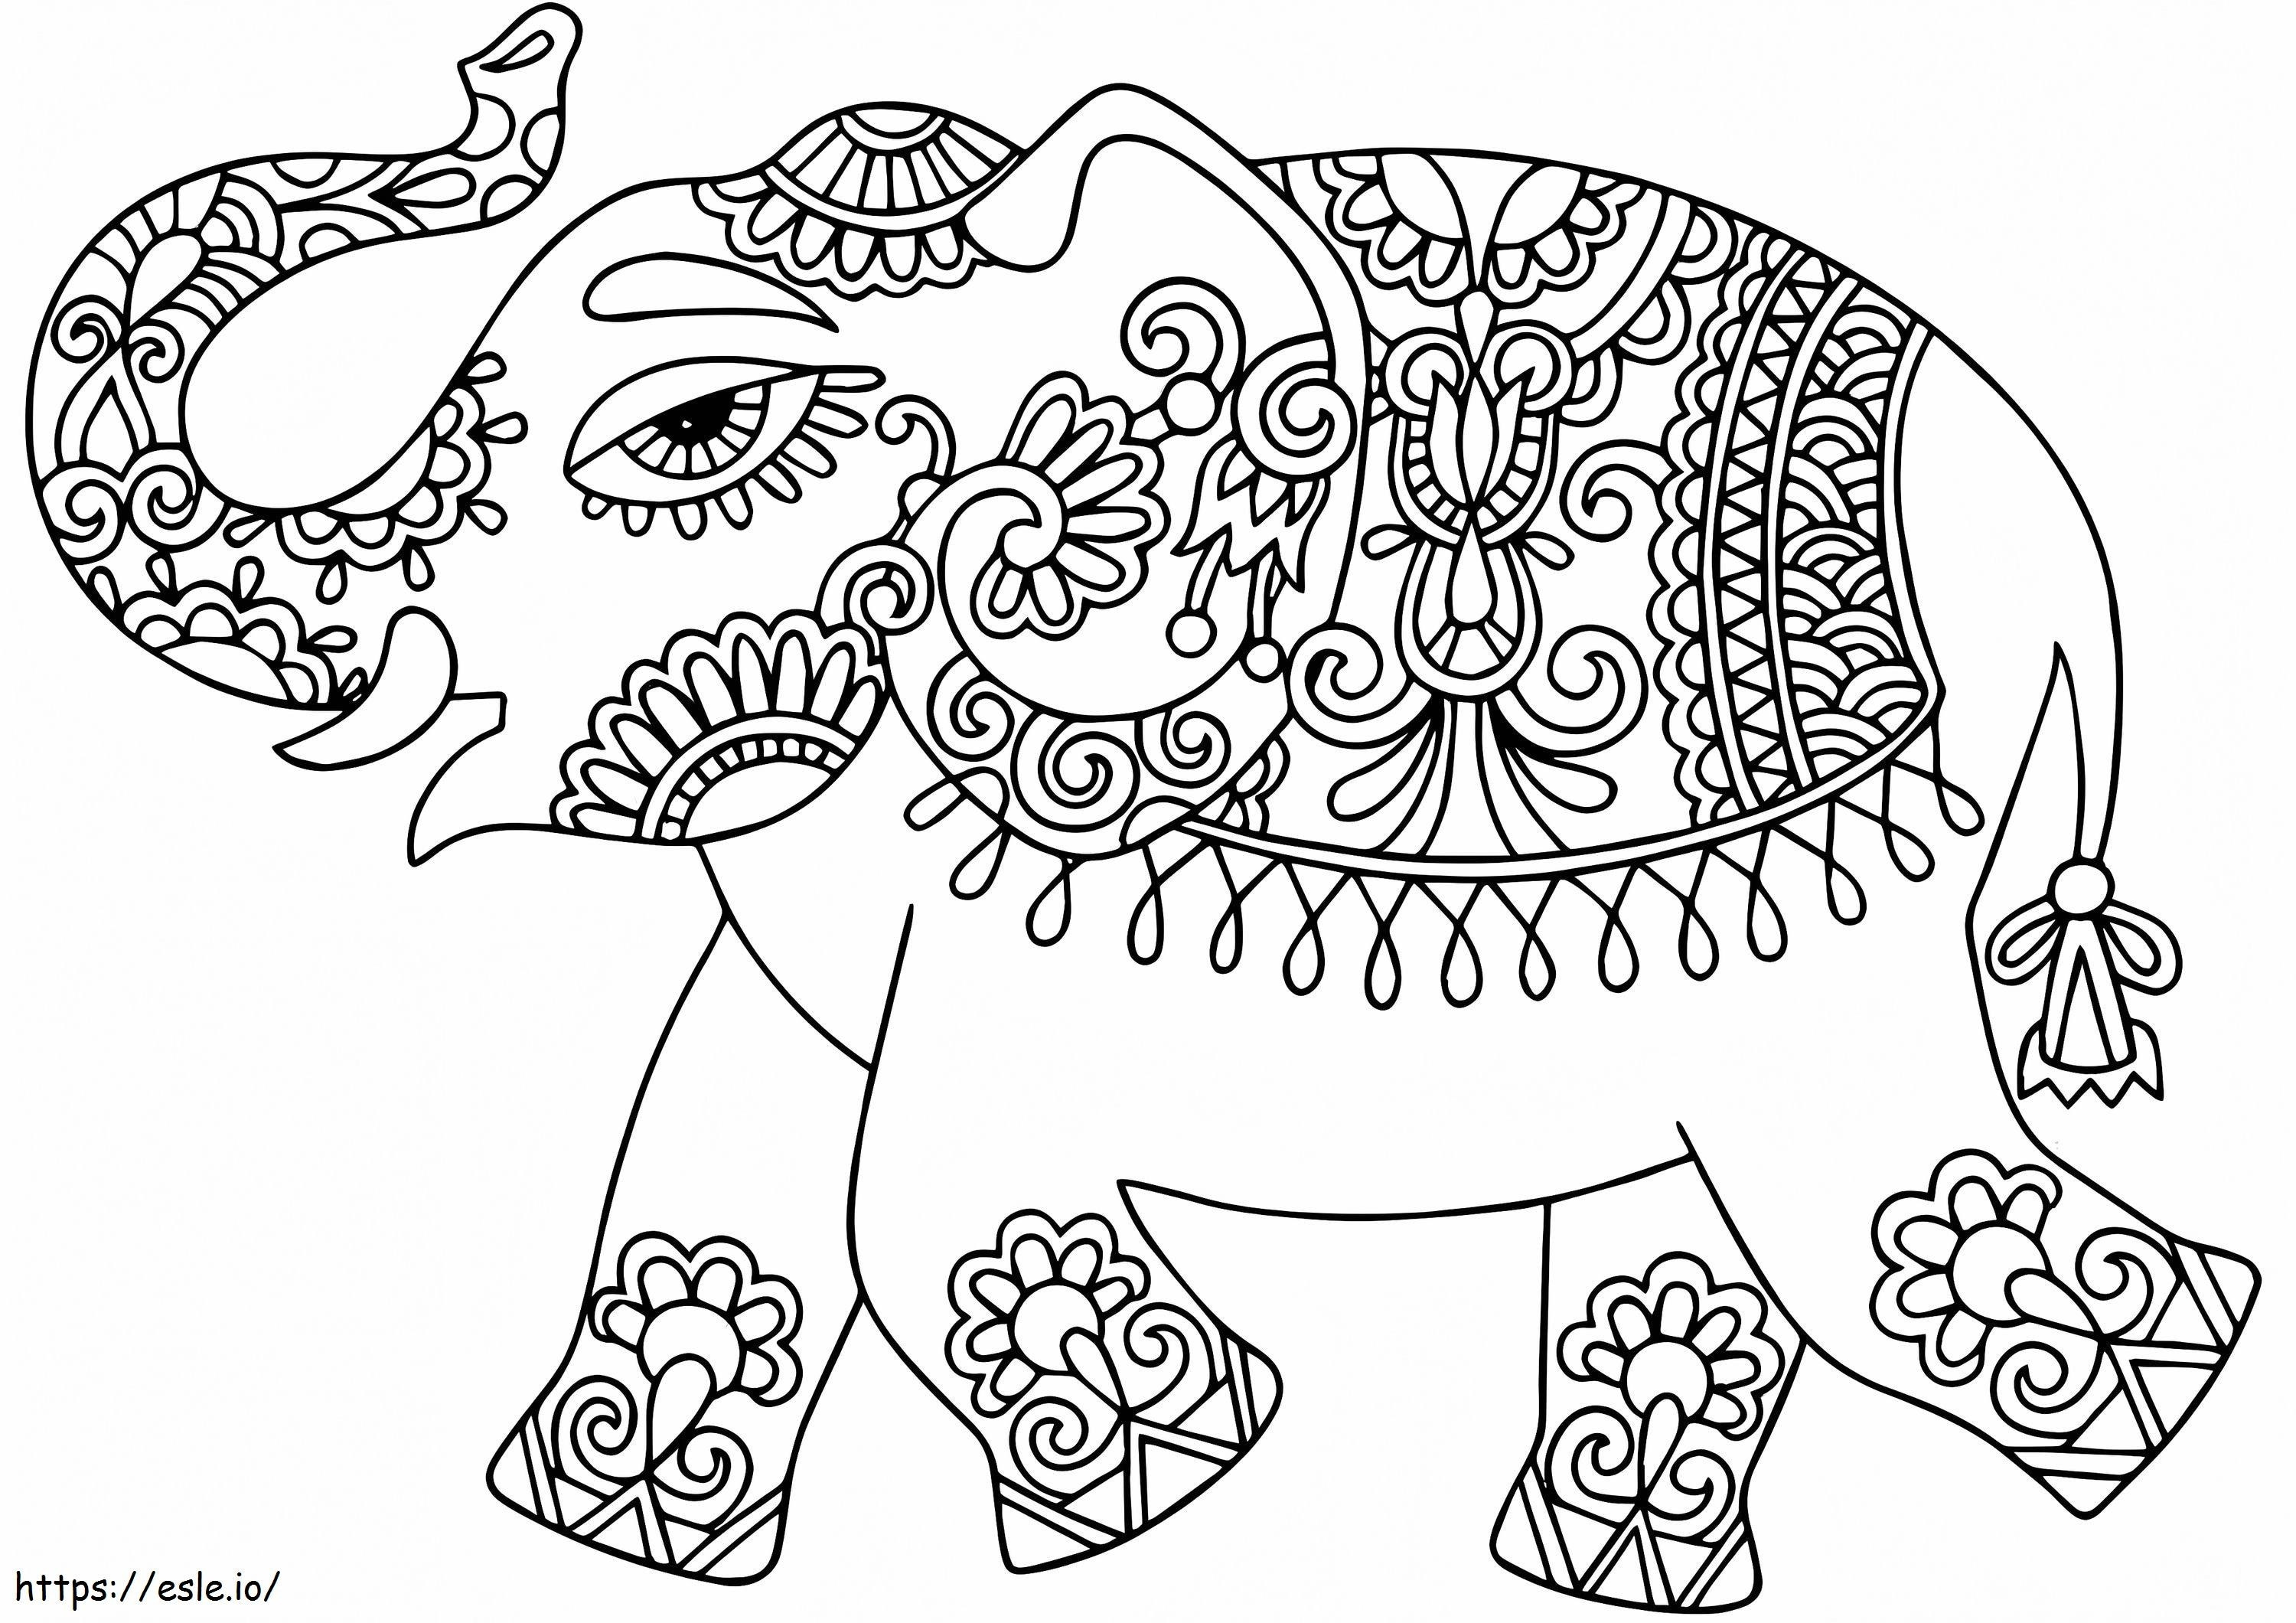 Elefant cu modele indiene de colorat